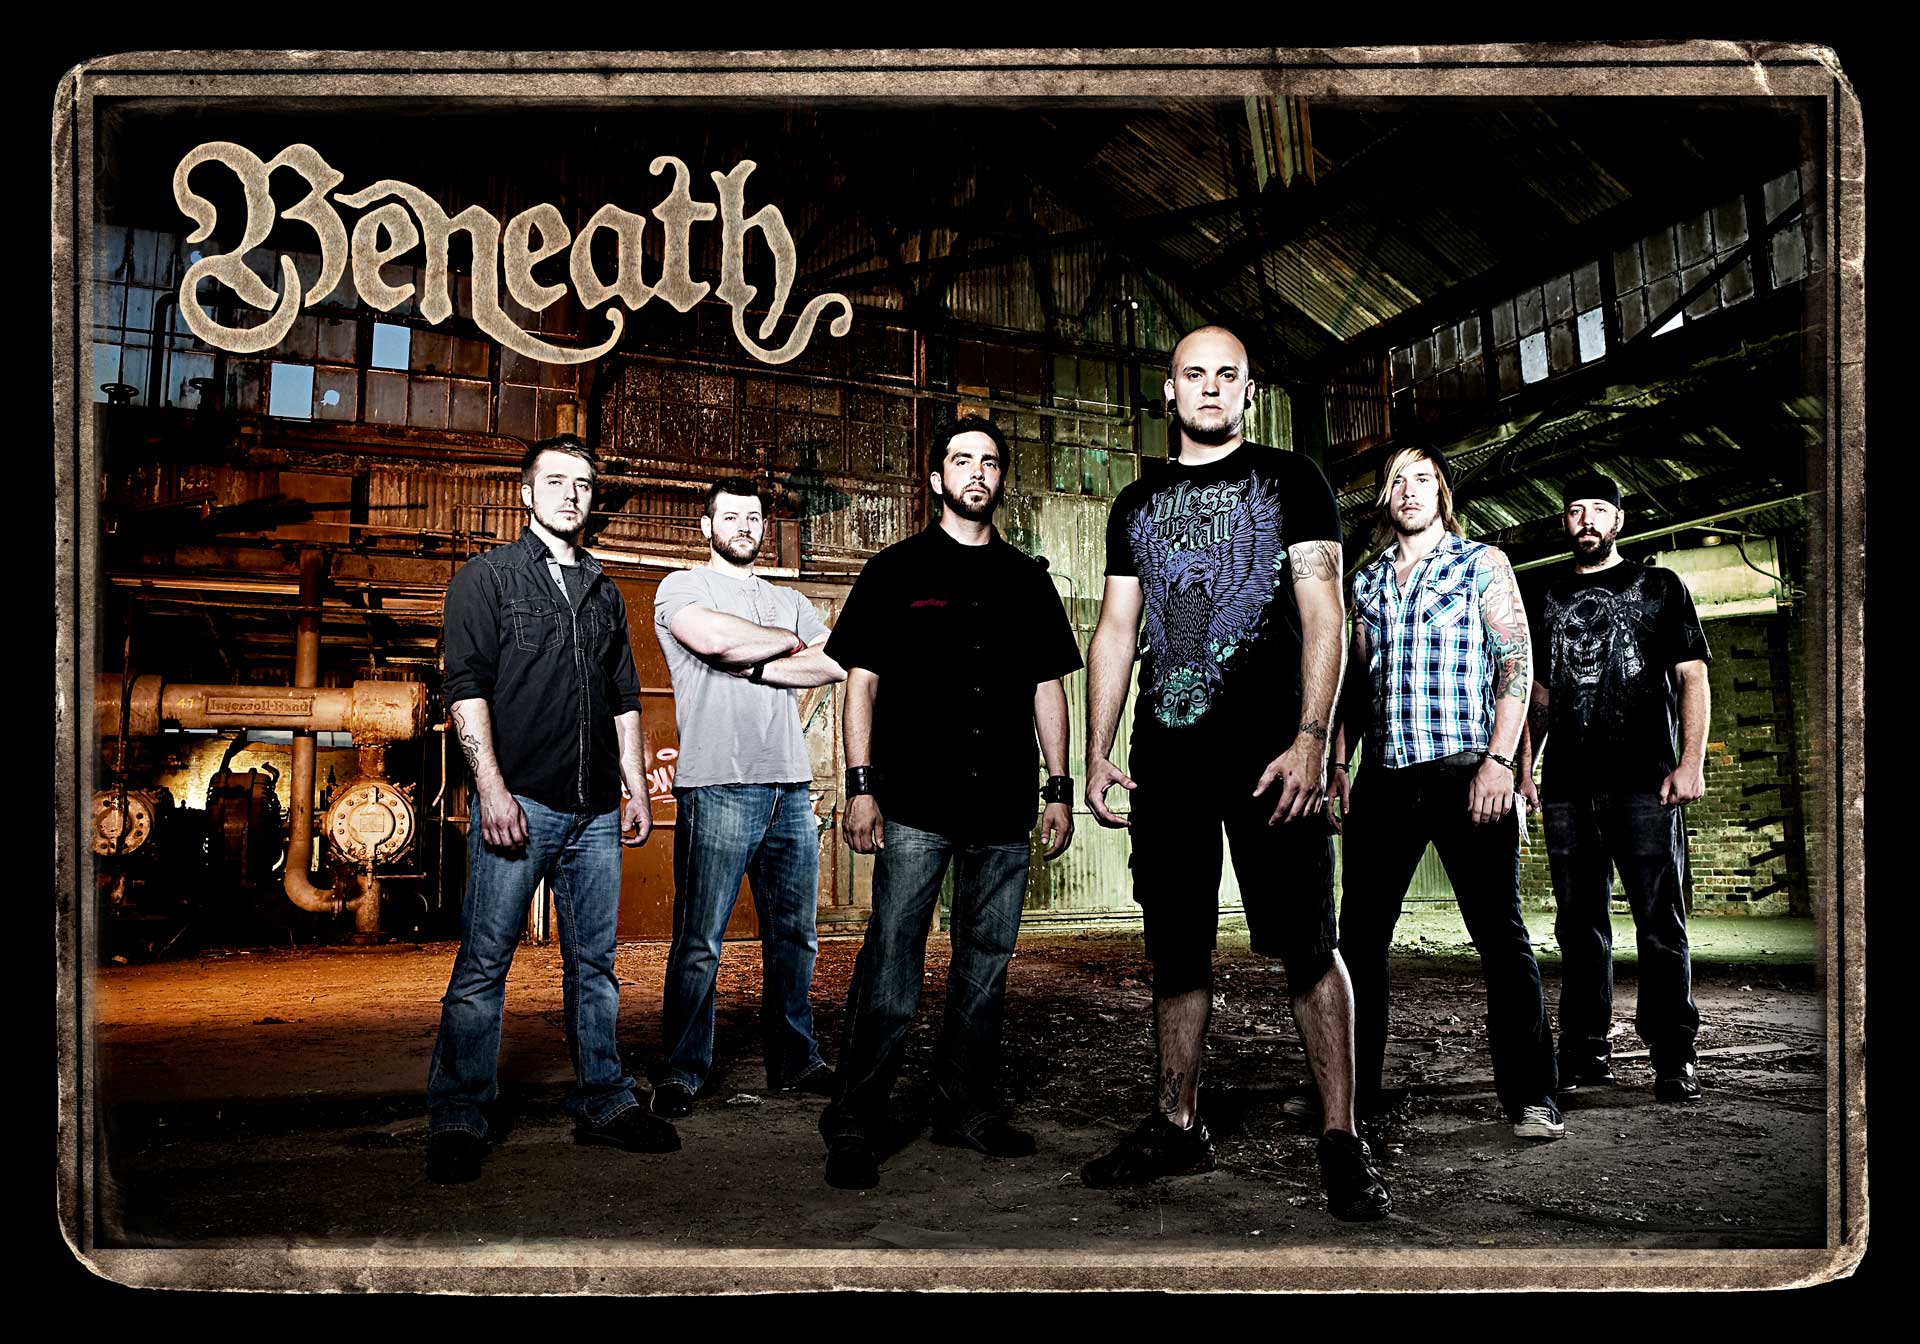 Beneath-poster2-herolight